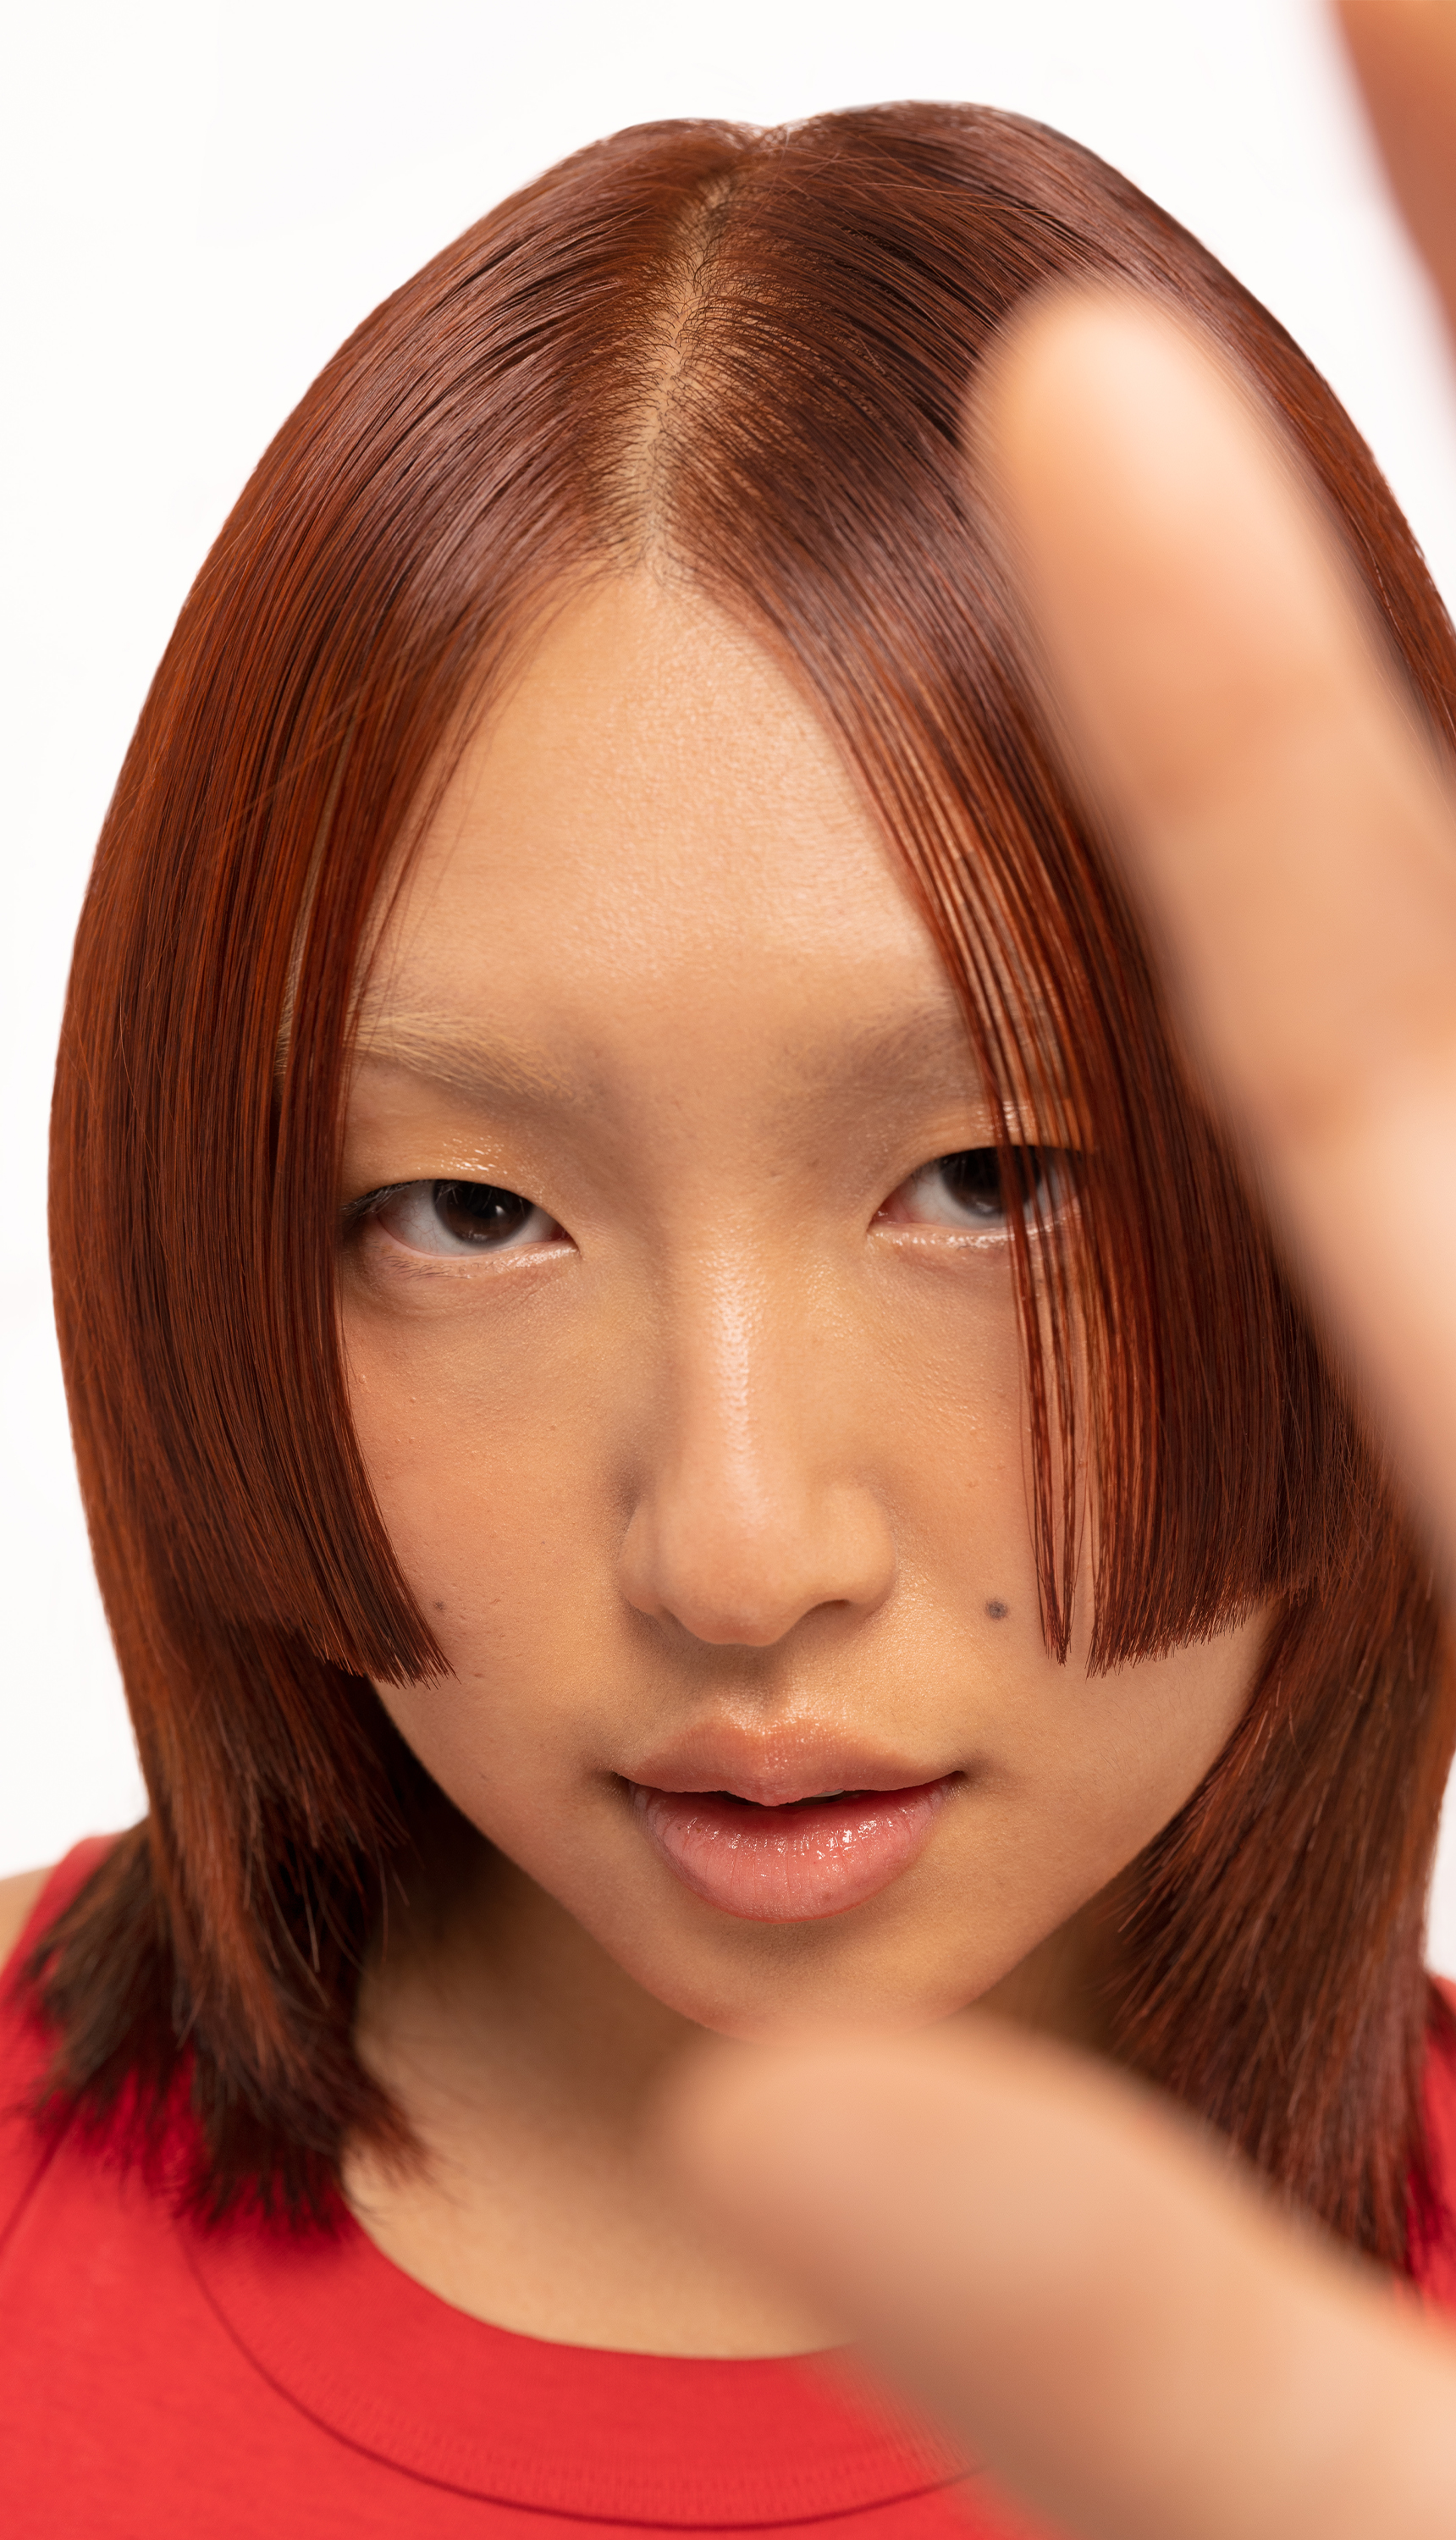 Model with copper hair, achieved with Bleach London No Bleach Hair Dye